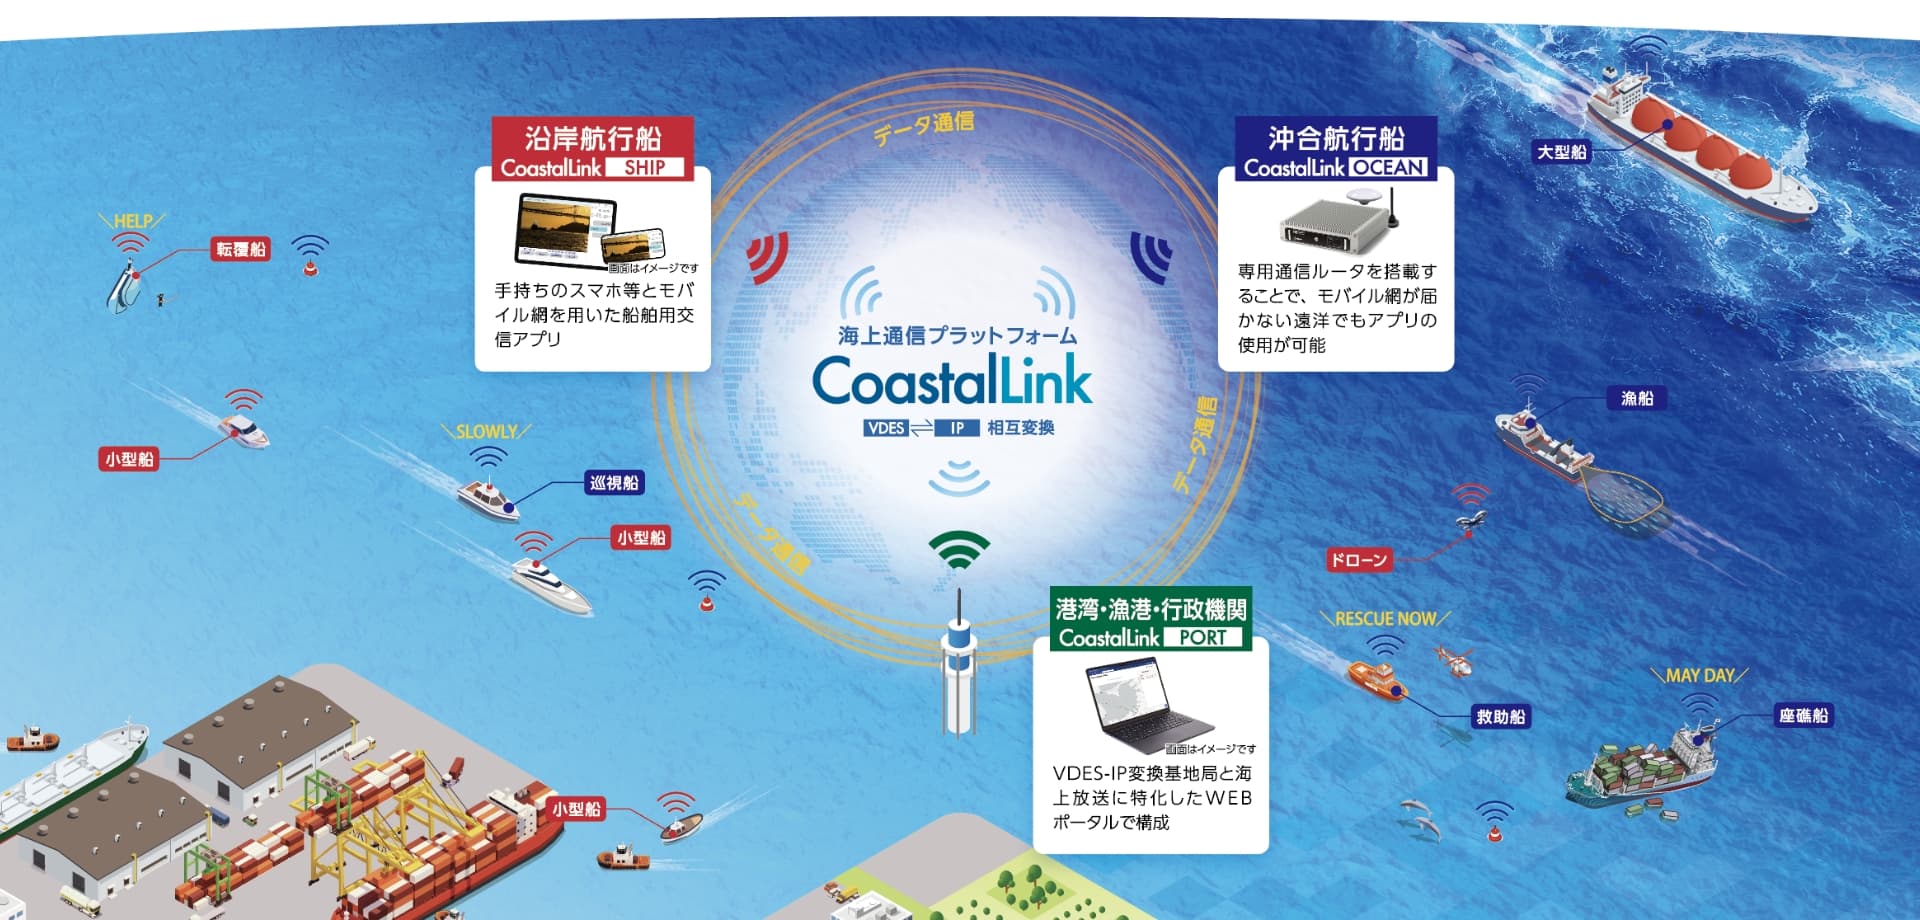 CoastalLink